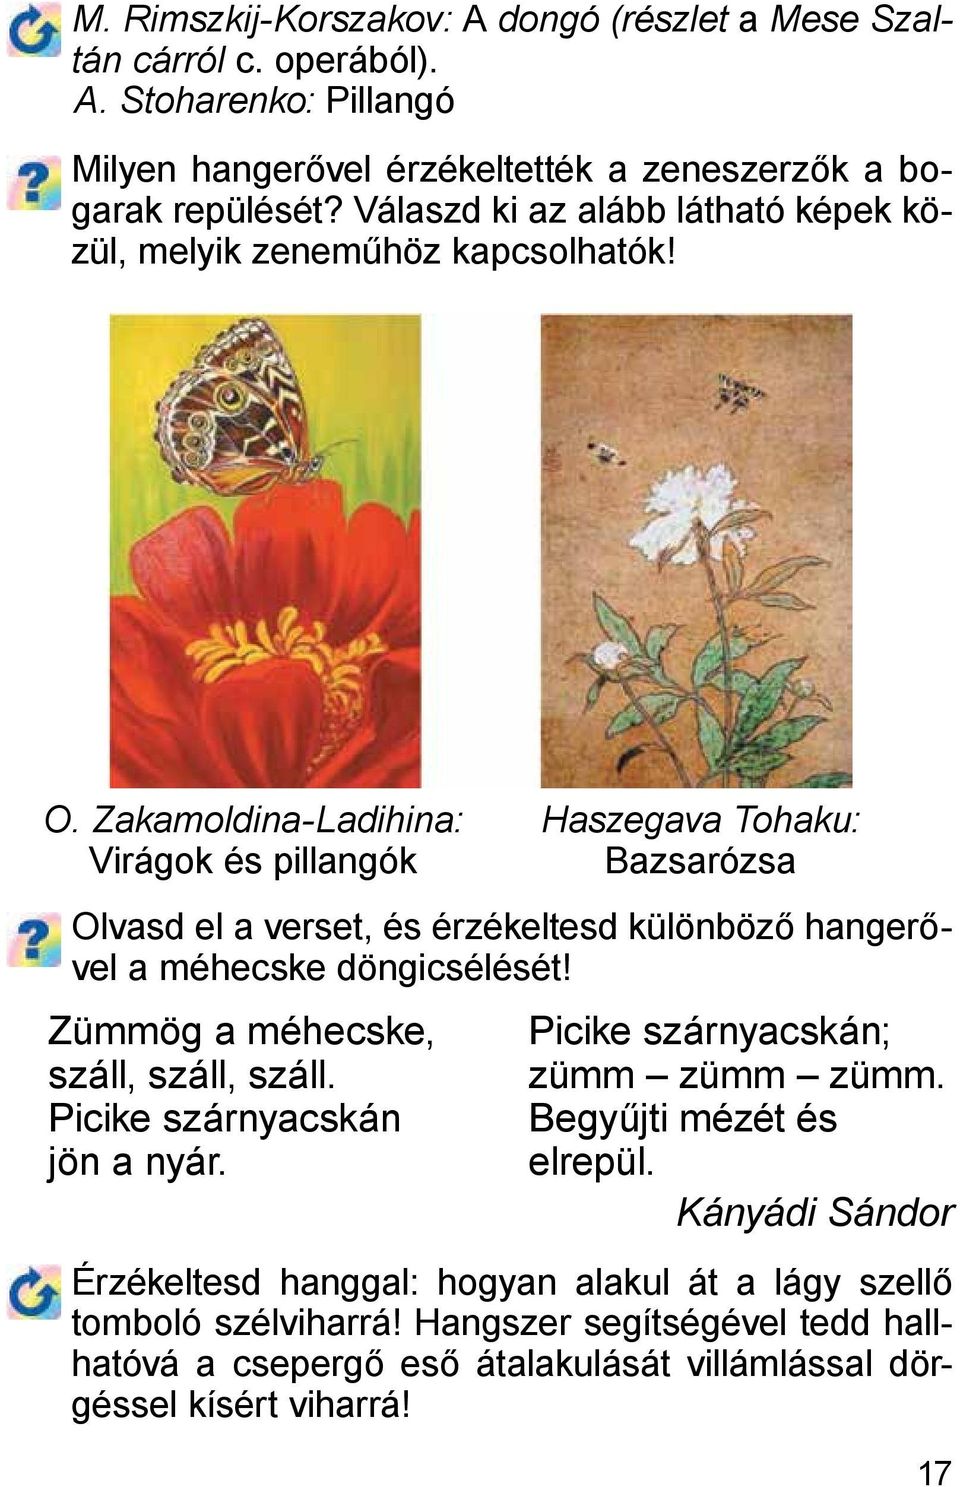 Zakamoldina-Ladihina: Virágok és pillangók Haszegava Tohaku: Bazsarózsa Olvasd el a verset, és érzékeltesd különböző hangerővel a méhecske döngicsélését!